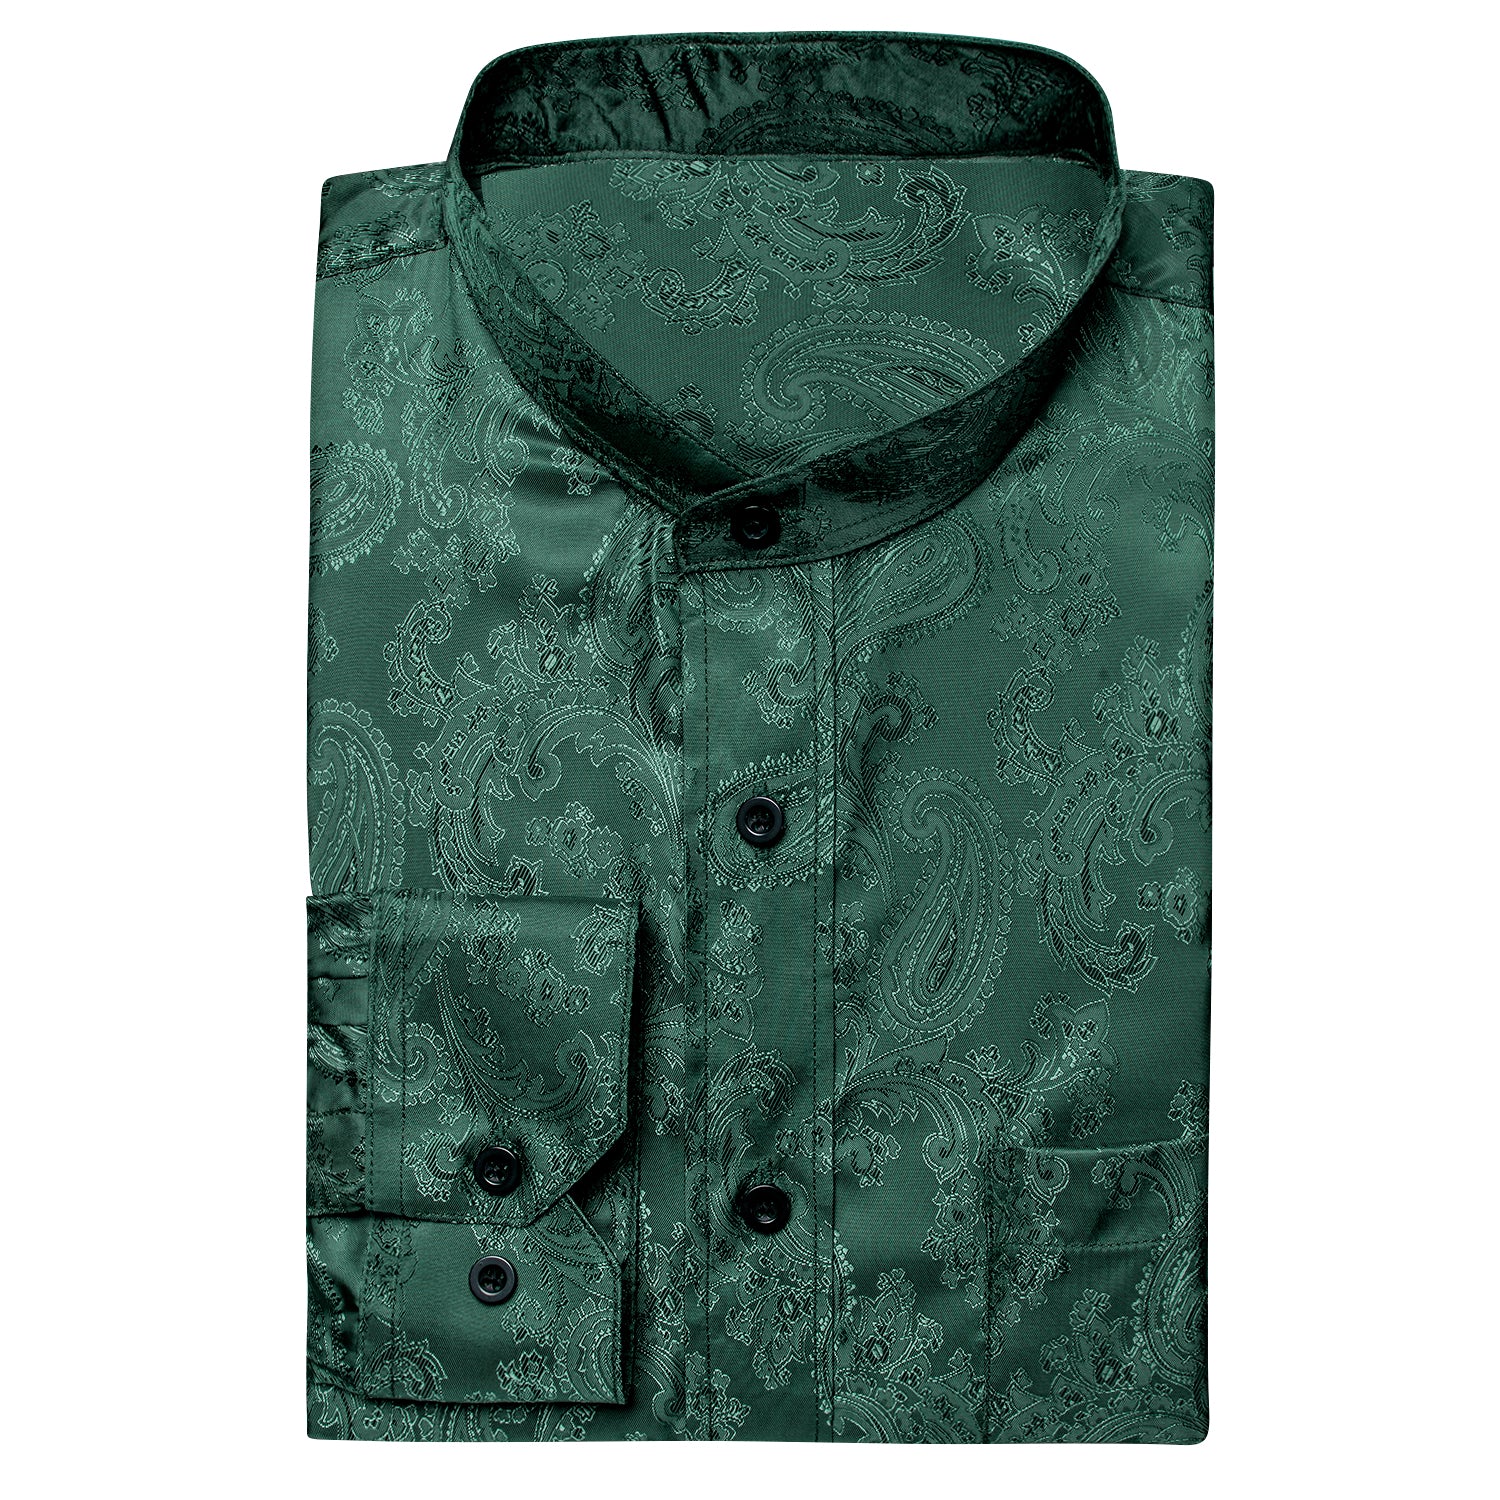 New Emerald Green Paisley  Men's Silk Dress Long Sleeve Shirt